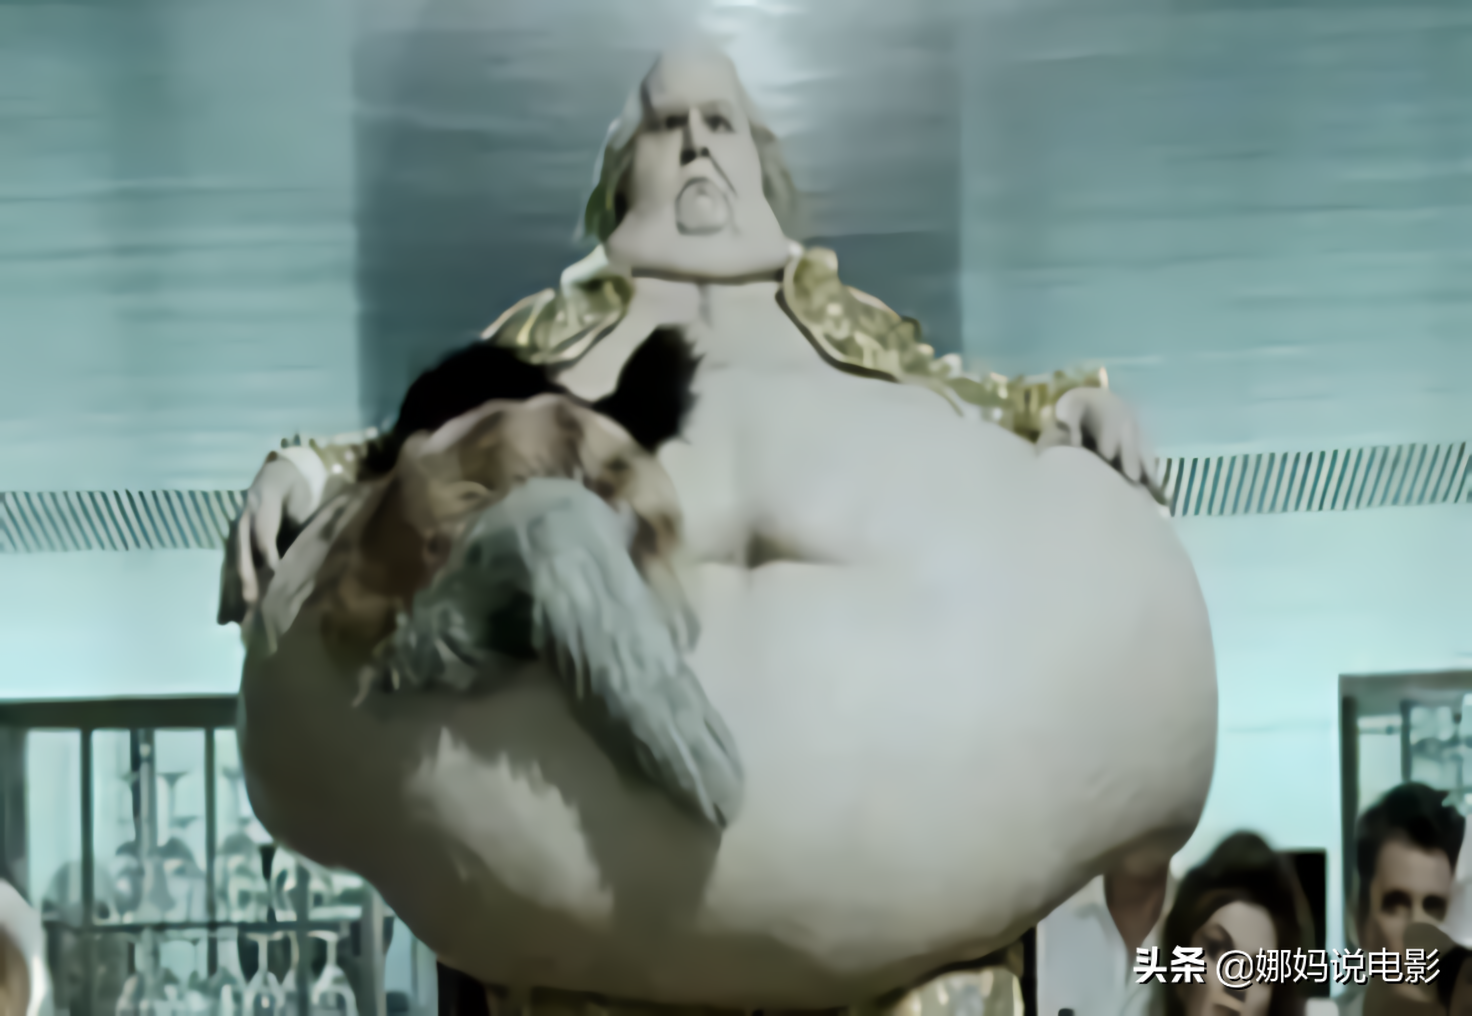 人体雕像：吃货冠军晚年胖成山，身体无法动弹，最后竟被爱猫啃食